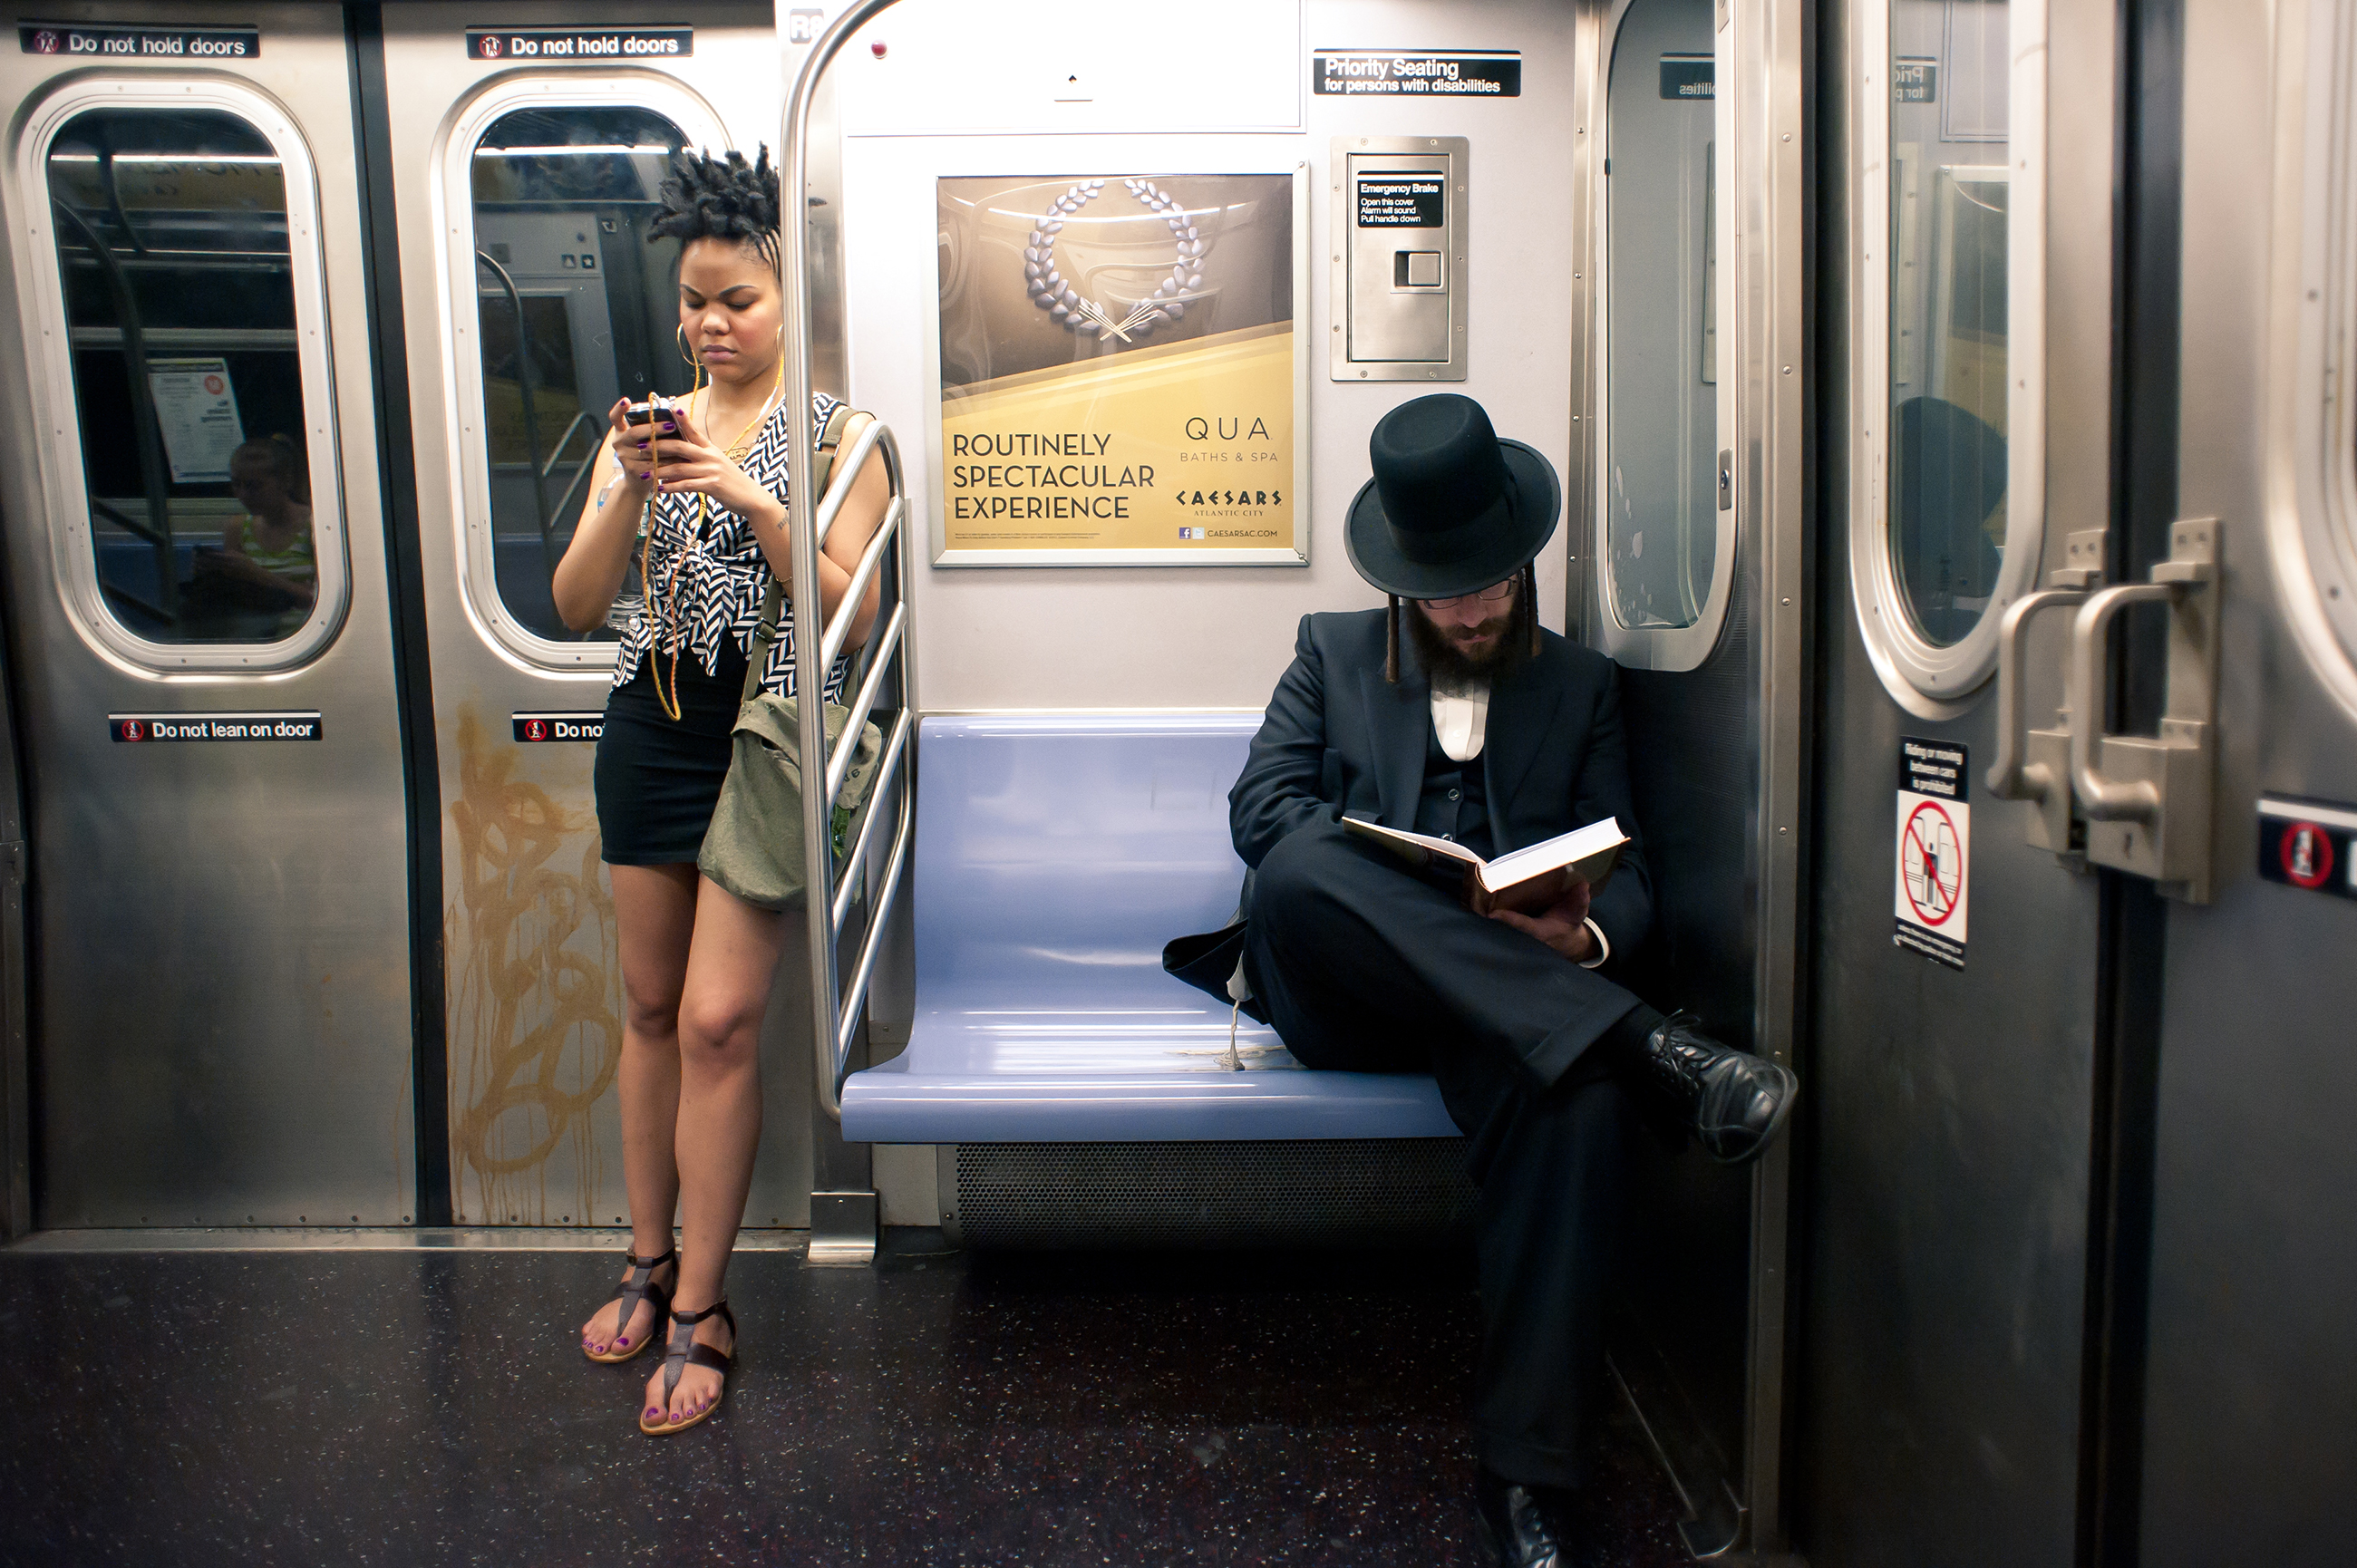 Stranger watching subway images